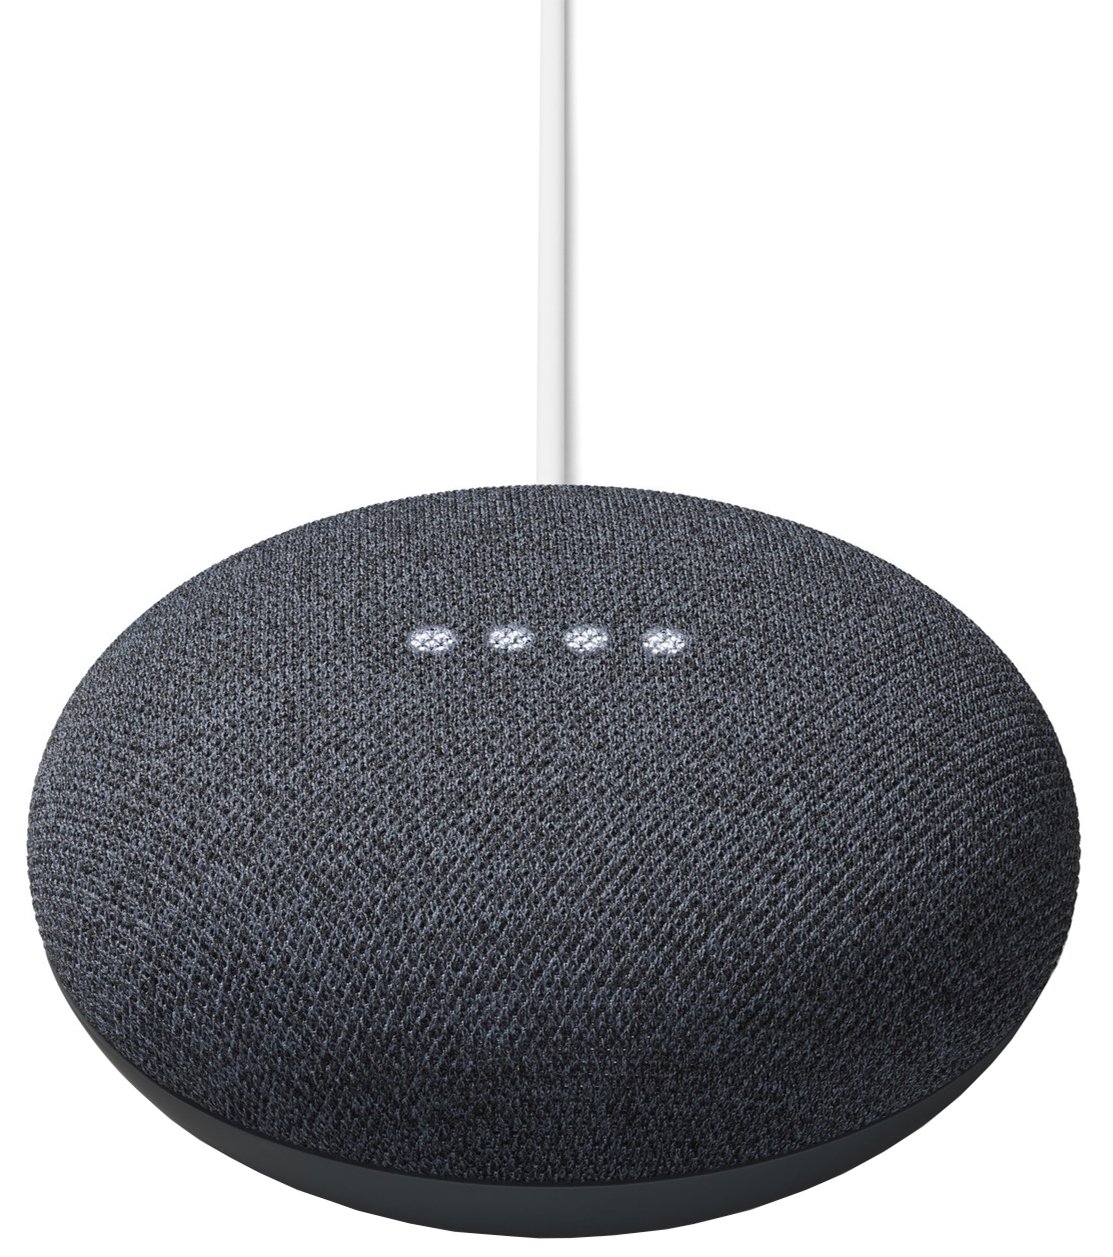 Buy Google Nest Mini Smart Speaker Charcoal Smart speakers Argos